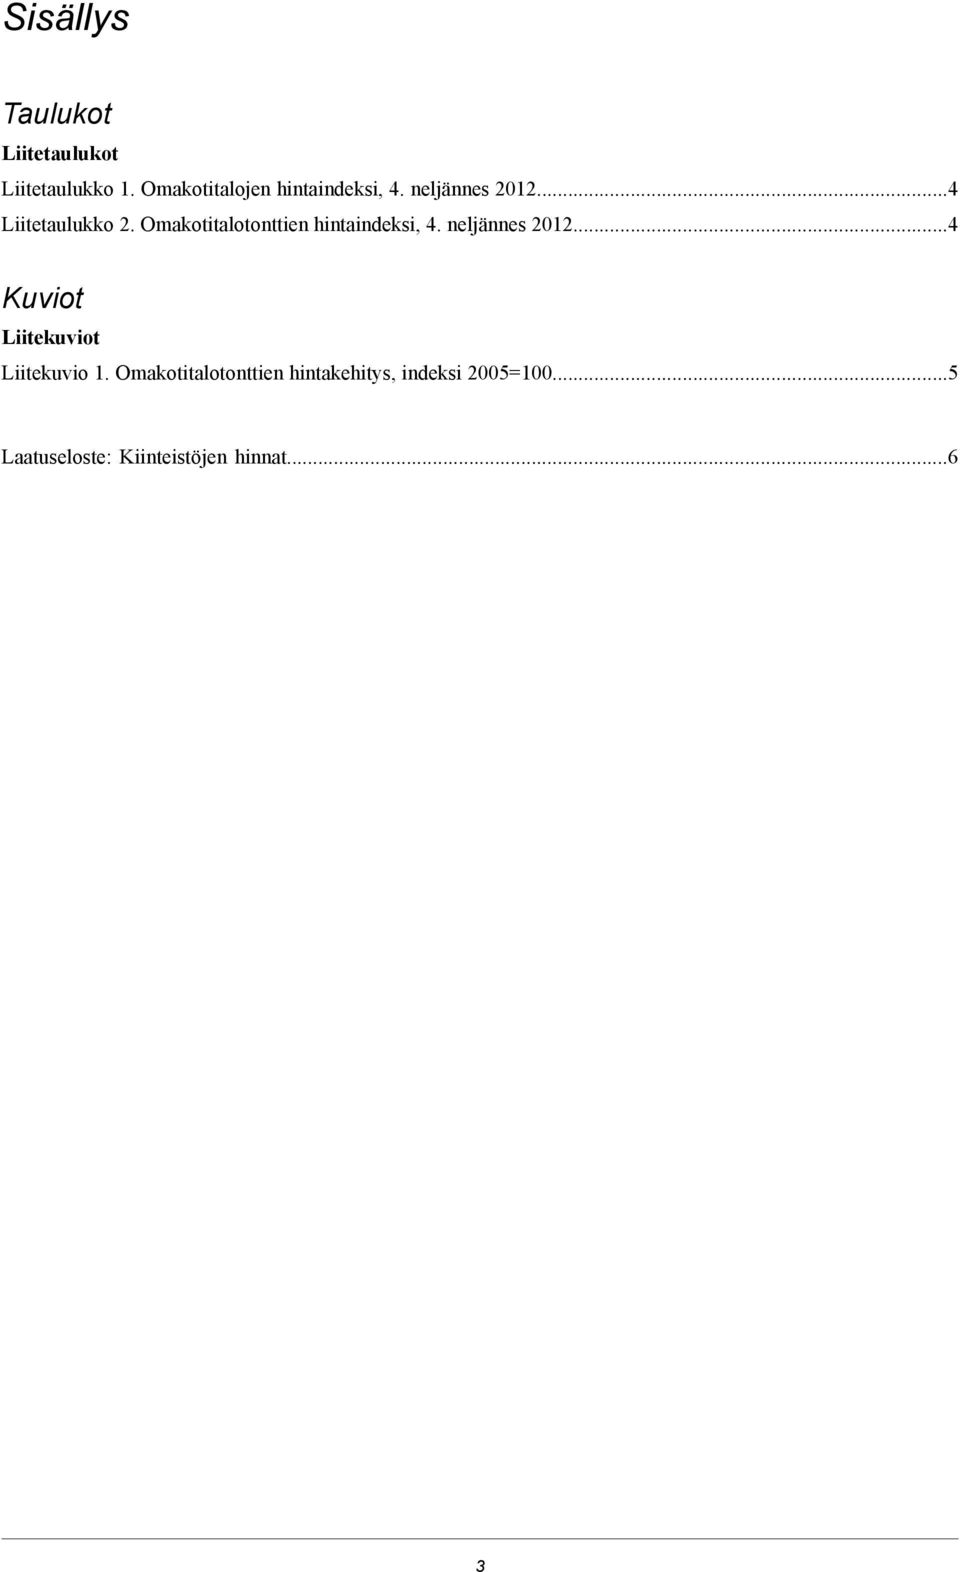 Omakotitalotonttien hintaindeksi, 4. neljännes 2012.